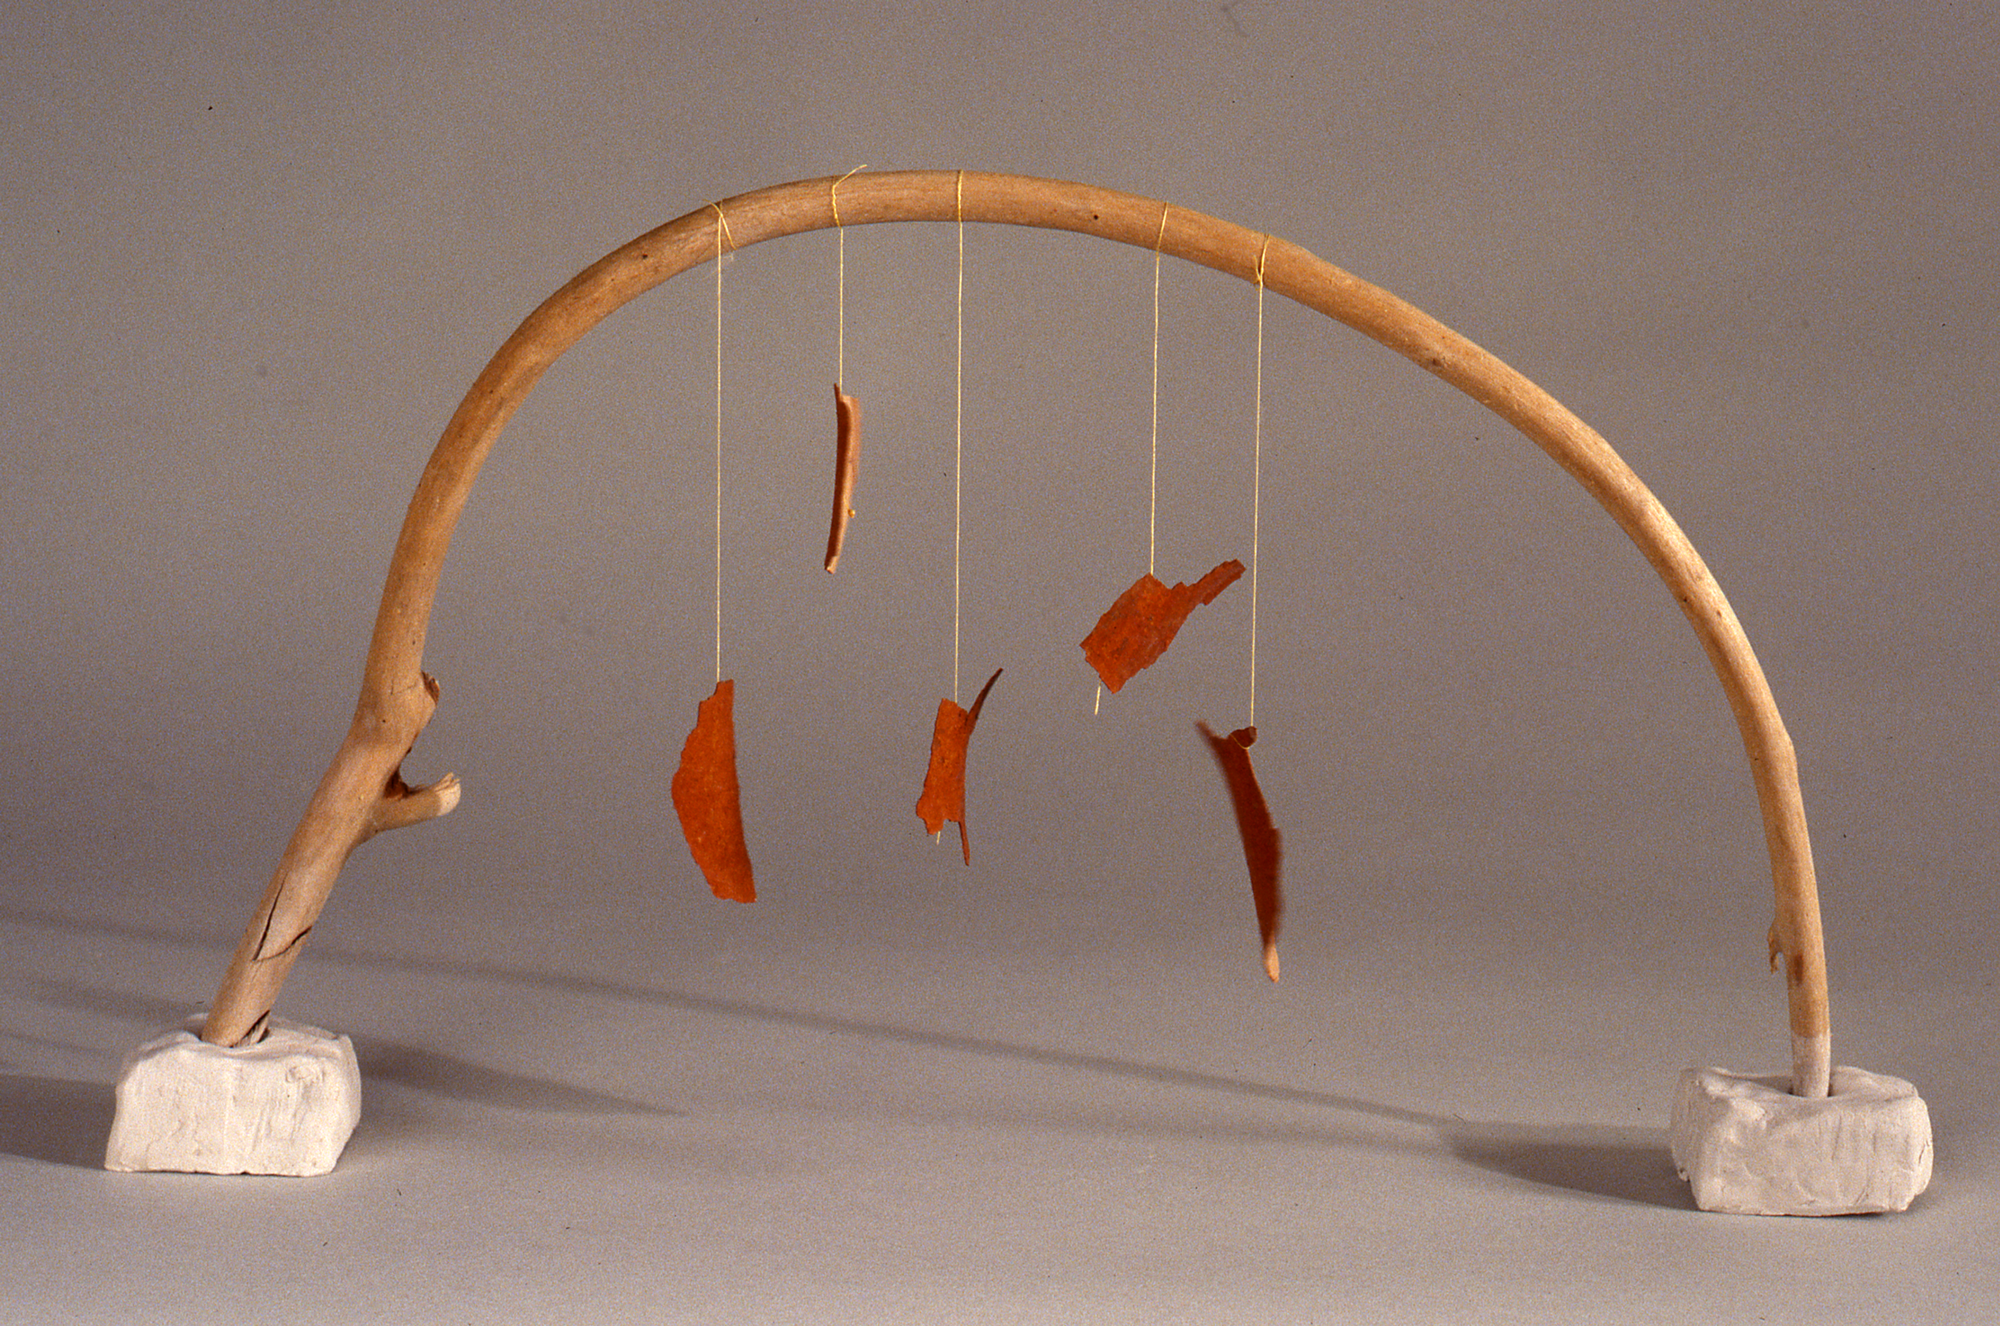 Cecilia Vicuña, Arco Arrayán, 1990, precarious object, mixed media